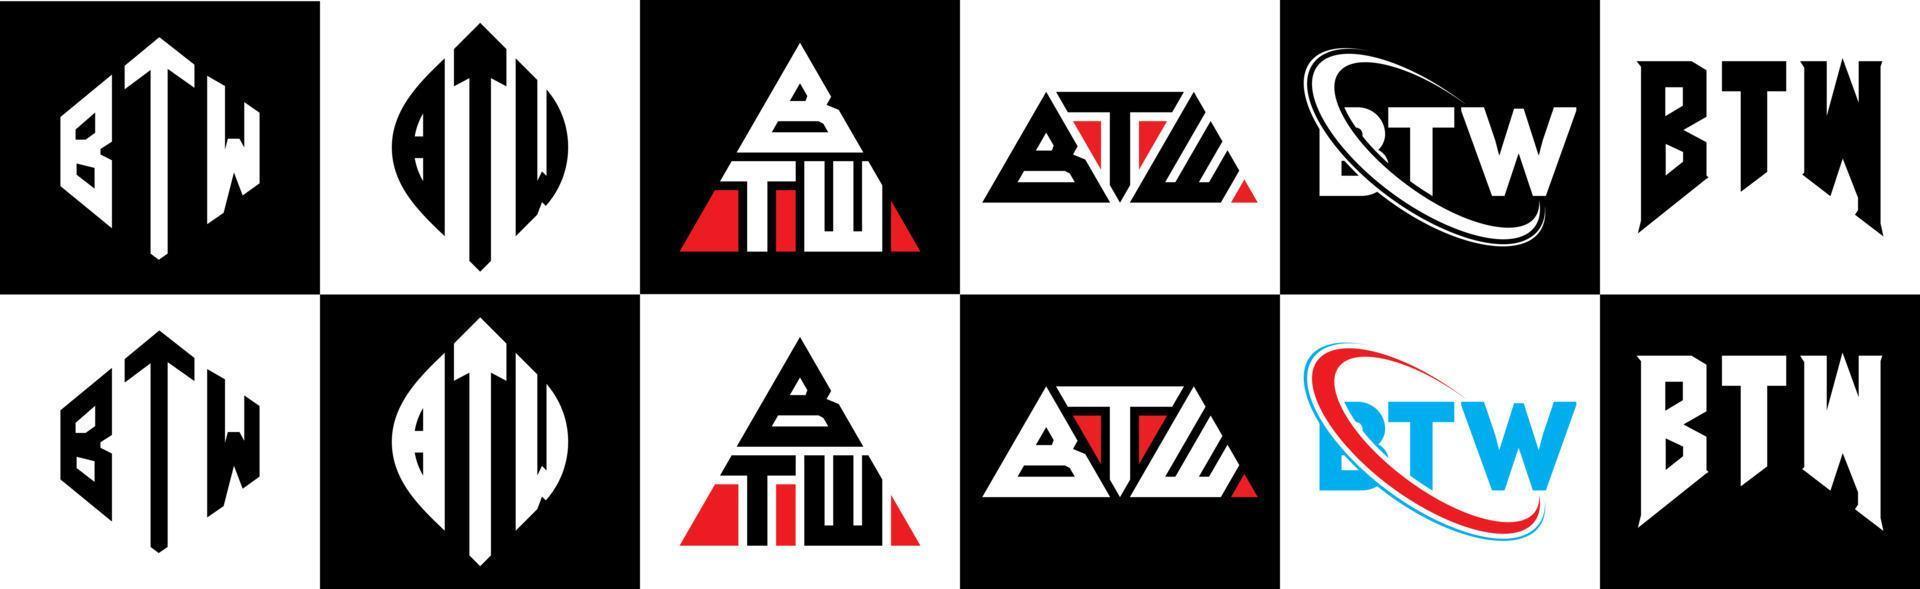 btw lettre logo design en six styles. btw polygone, cercle, triangle, hexagone, style plat et simple avec logo de lettre de variation de couleur noir et blanc dans un plan de travail. btw logo minimaliste et classique vecteur